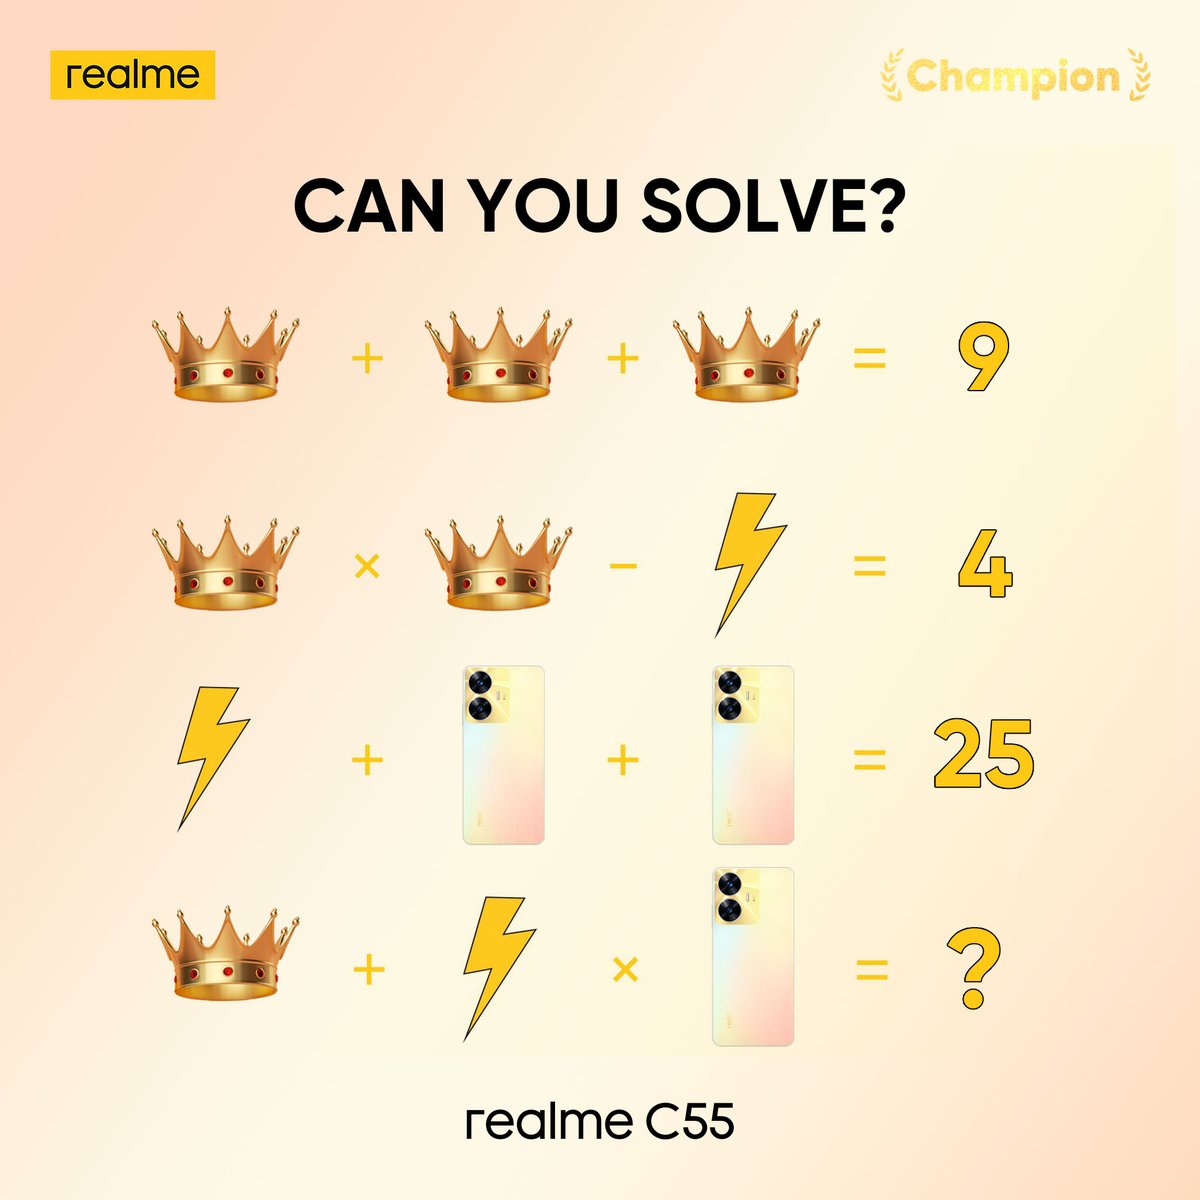 Find the correct answer! #Trivia #realmeC55 #ChampionCamera #ChampionMemory